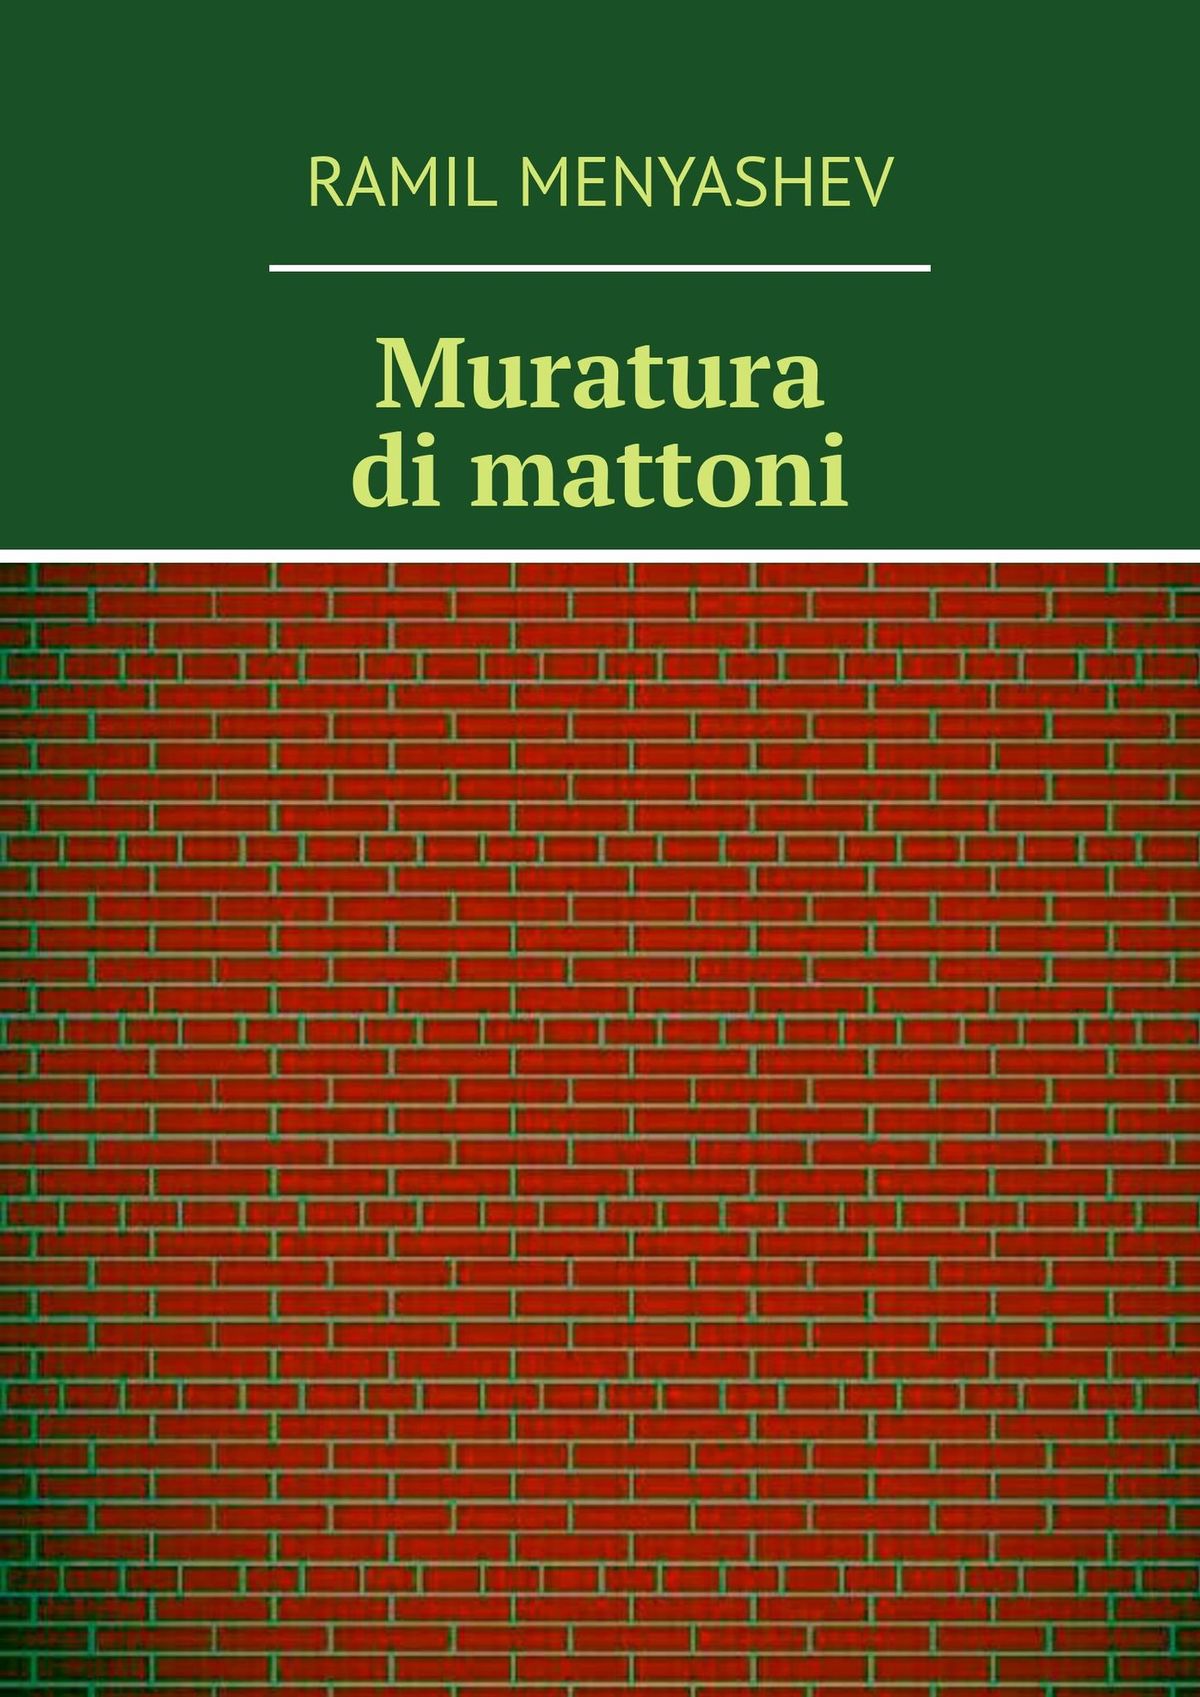 Книга Muratura di mattoni из серии , созданная Ramil Menyashev, может относится к жанру Руководства. Стоимость книги Muratura di mattoni  с идентификатором 29607176 составляет 400.00 руб.